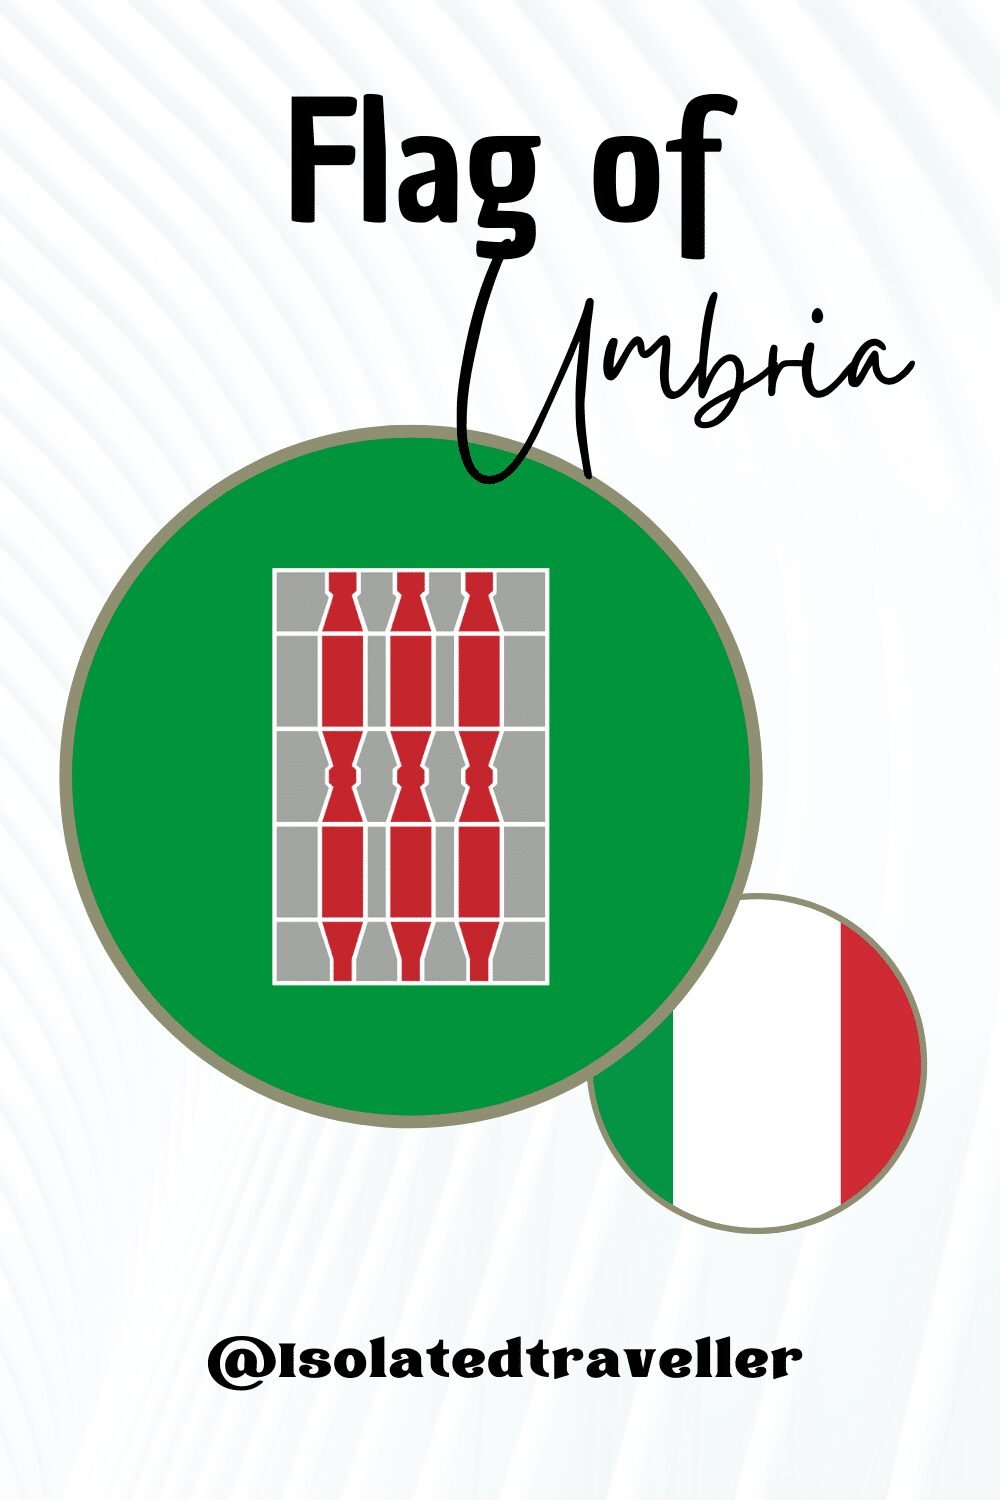 Flag of Umbria - Pinterest